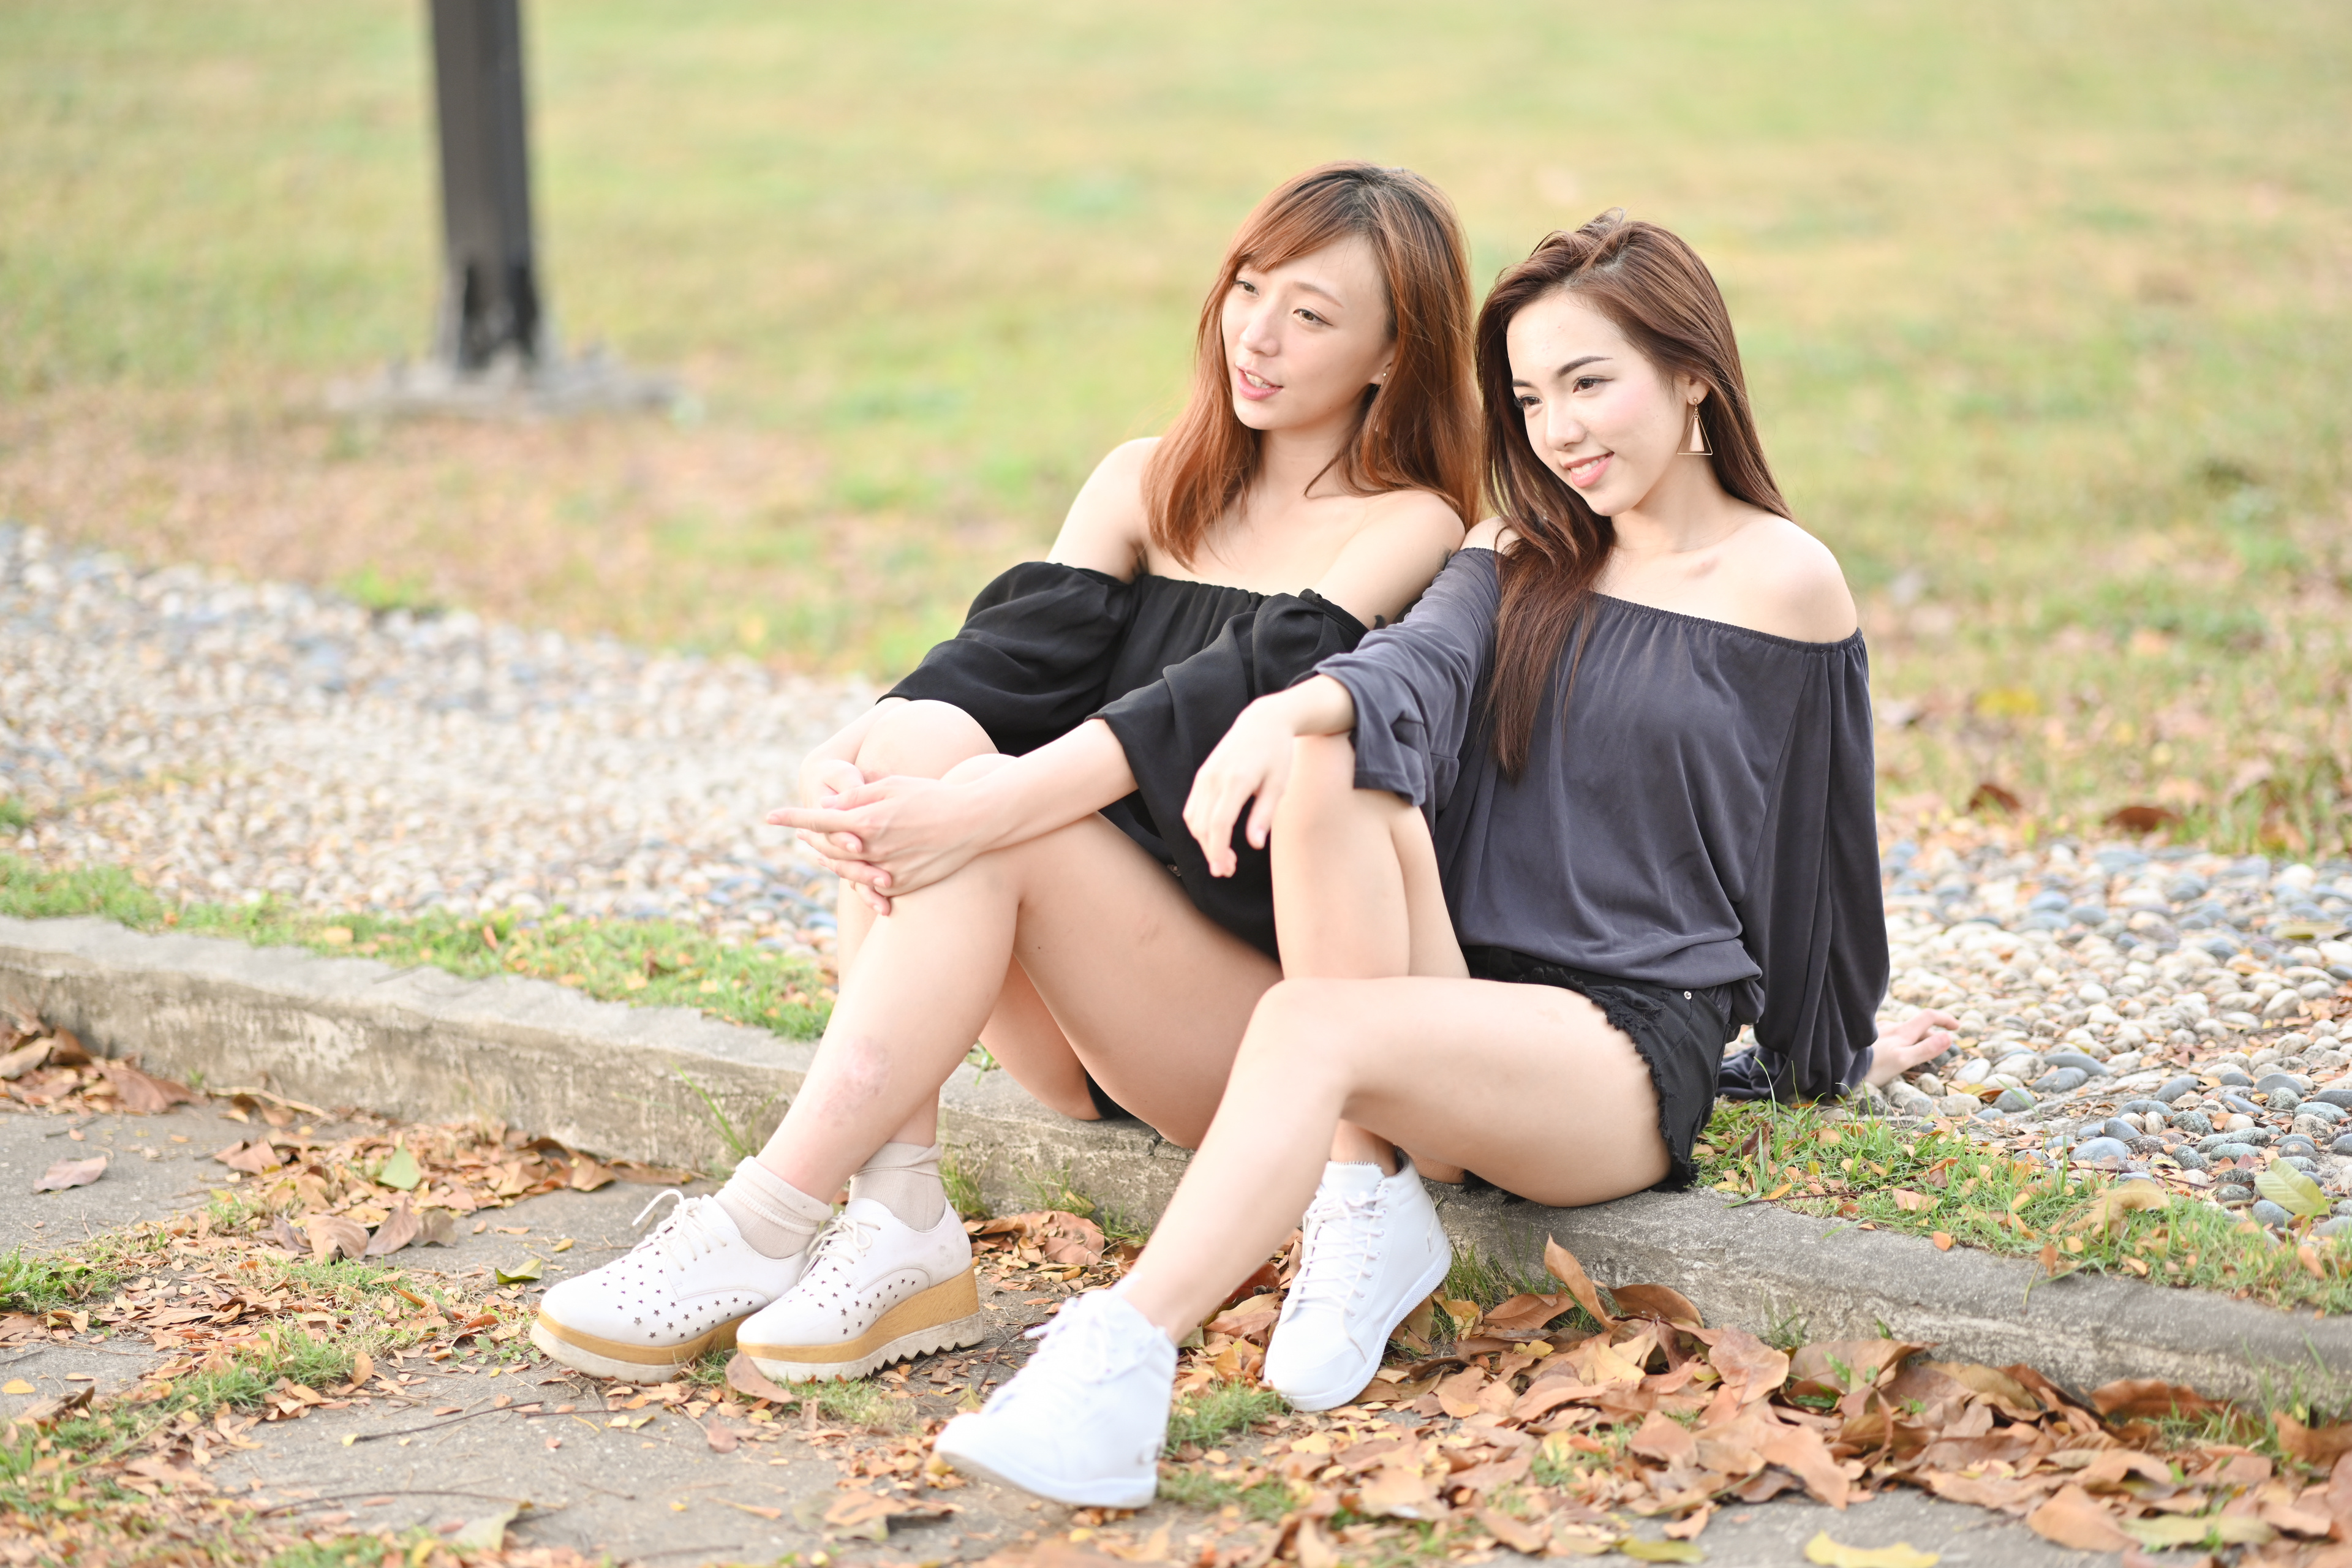 Asian Model Women Long Hair Dark Hair Sitting Socks Tan Socks Short Socks Shoes White Shoes Sneakers 3840x2560